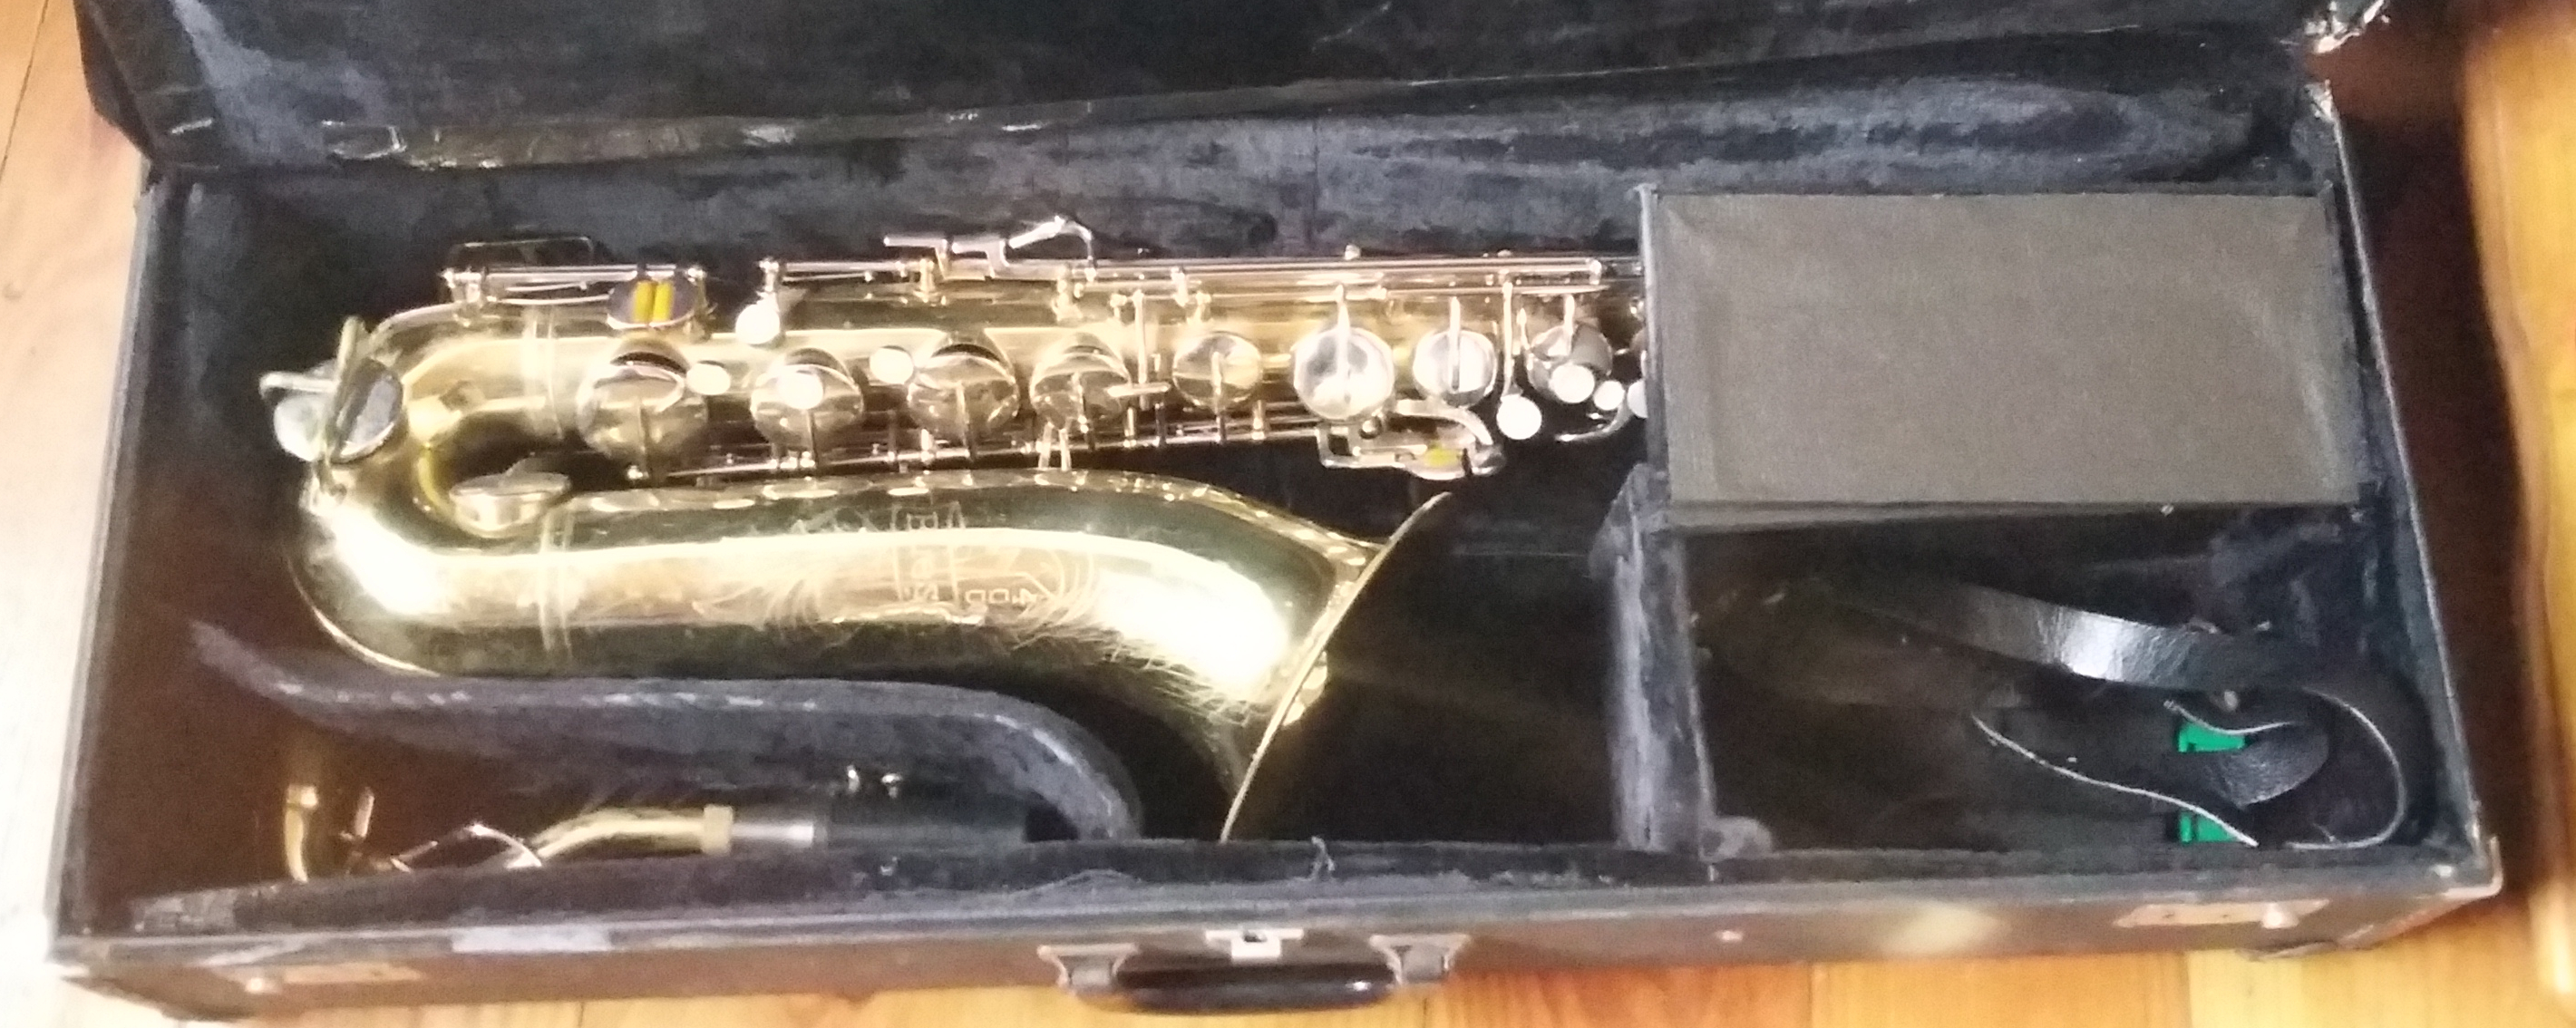 beuscher 500 tenor saxophone